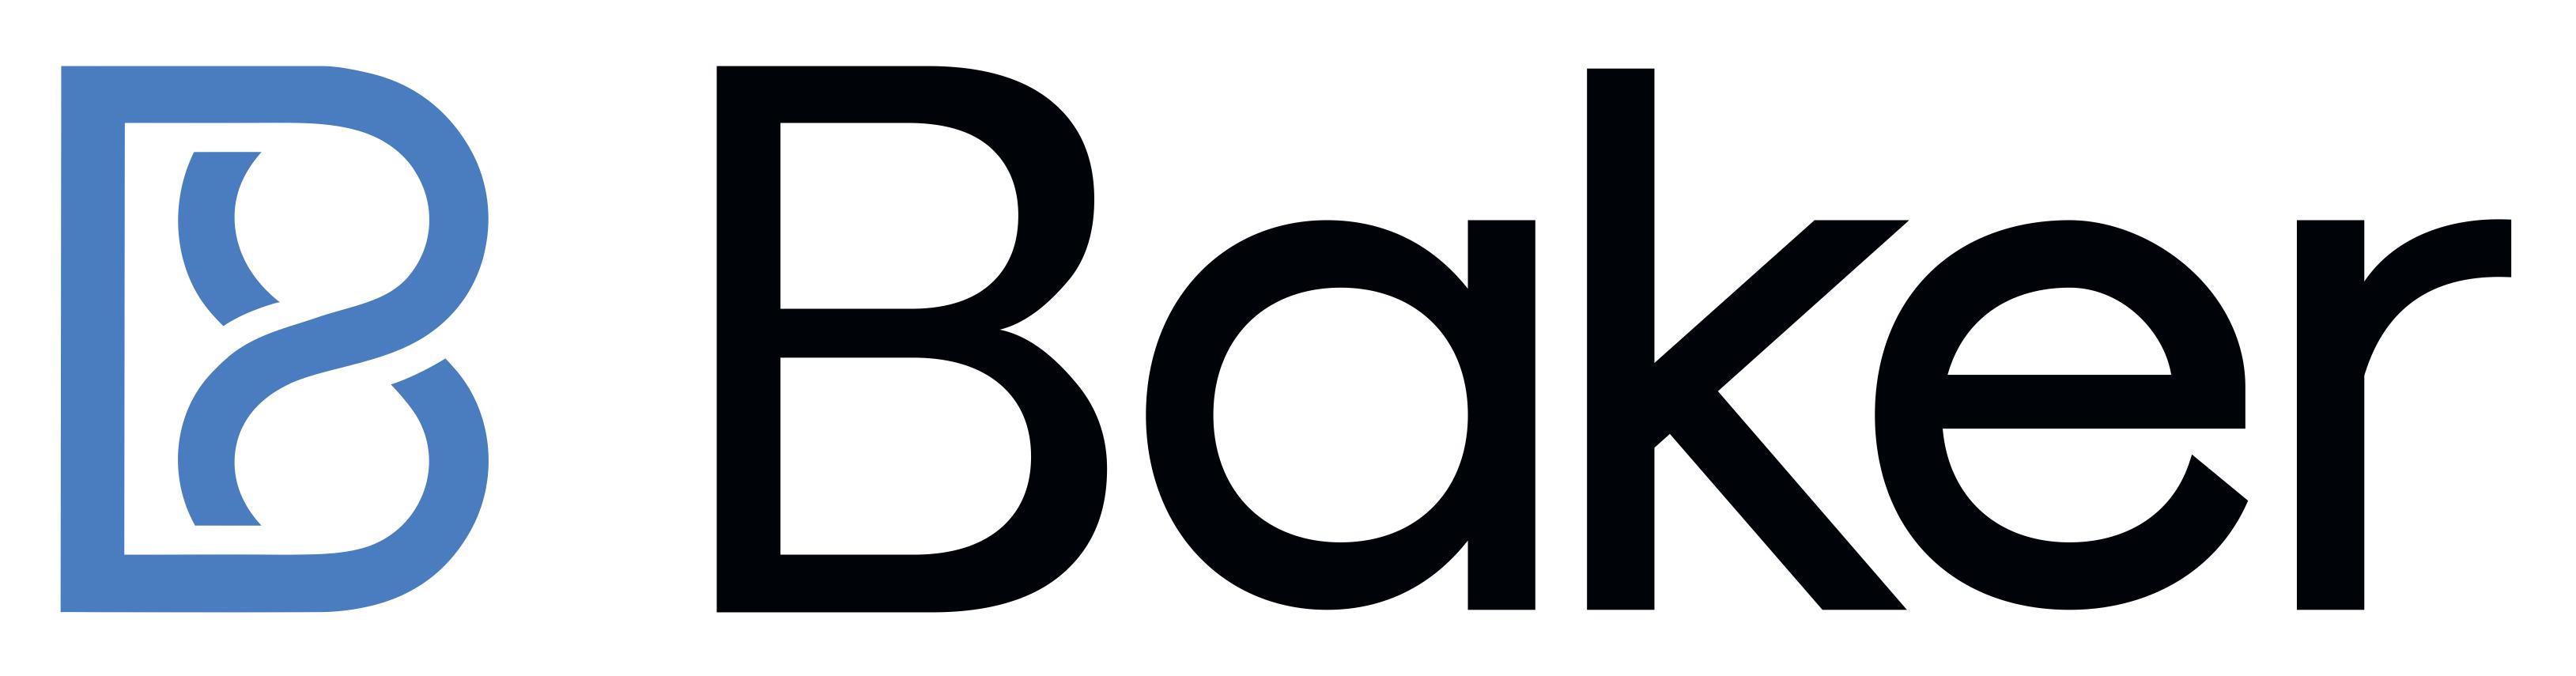 Logo The Baker Company